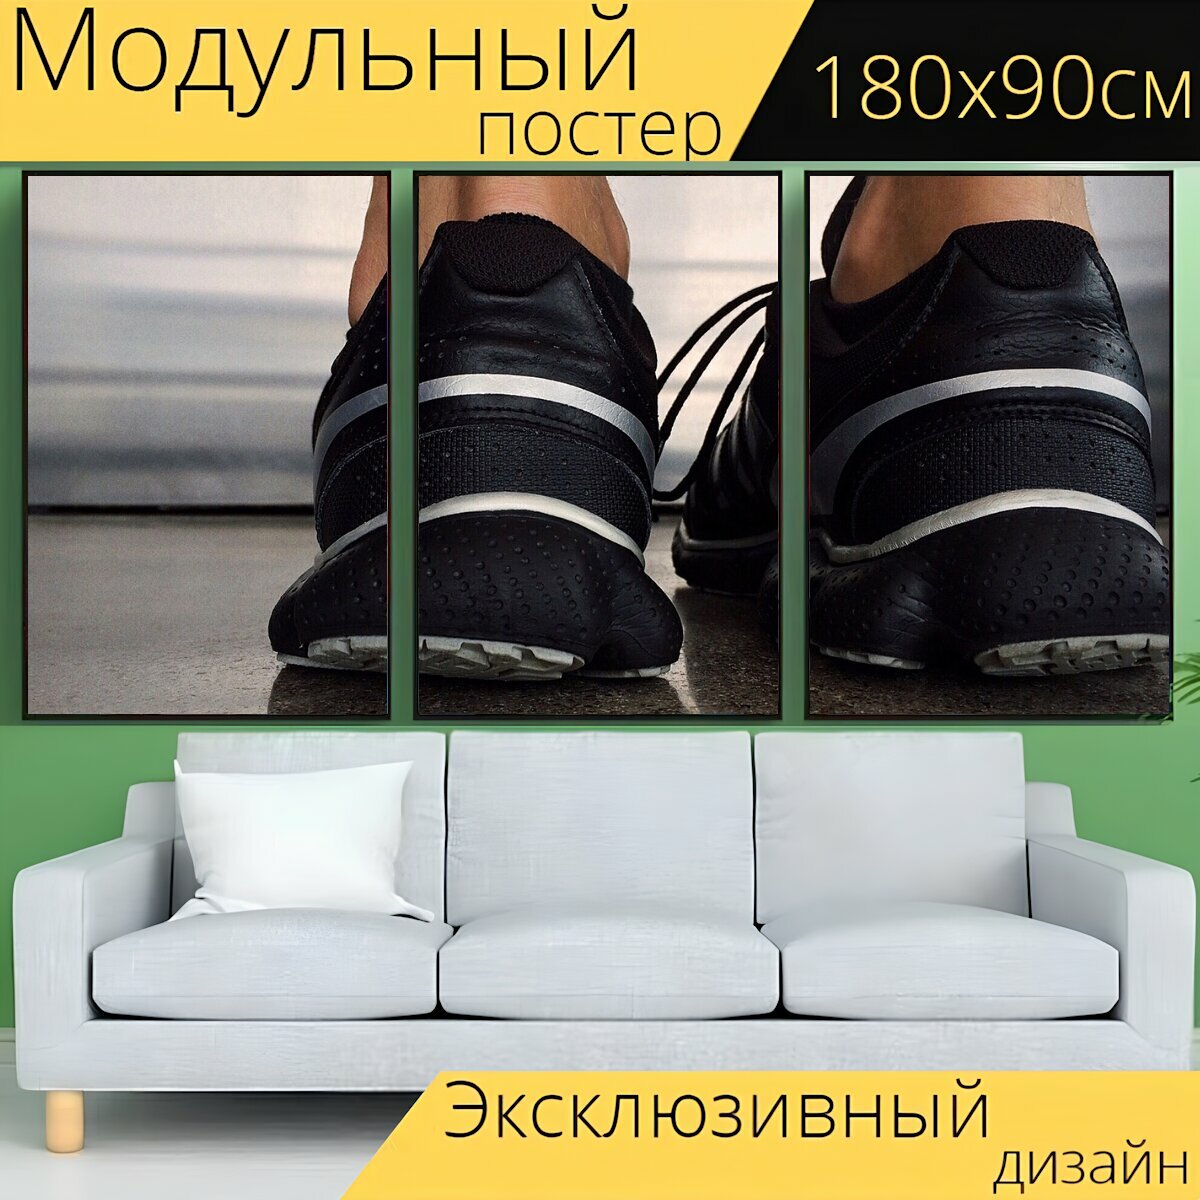 Модульный постер "Туфли, бег, кроссовки" 180 x 90 см. для интерьера